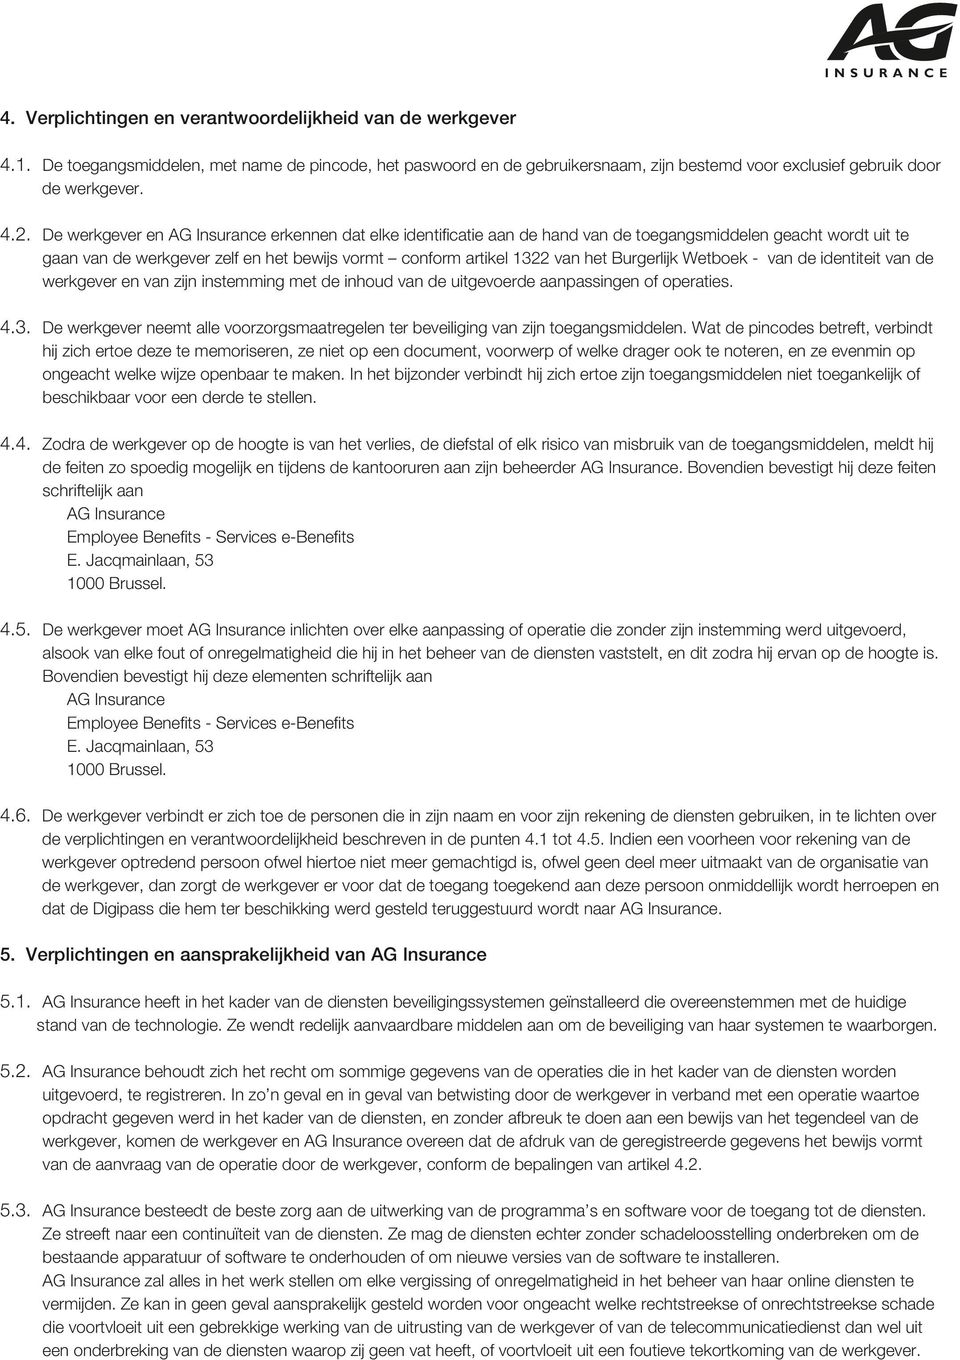 Burgerlijk Wetboek - van de identiteit van de werkgever en van zijn instemming met de inhoud van de uitgevoerde aanpassingen of operaties. 4.3.